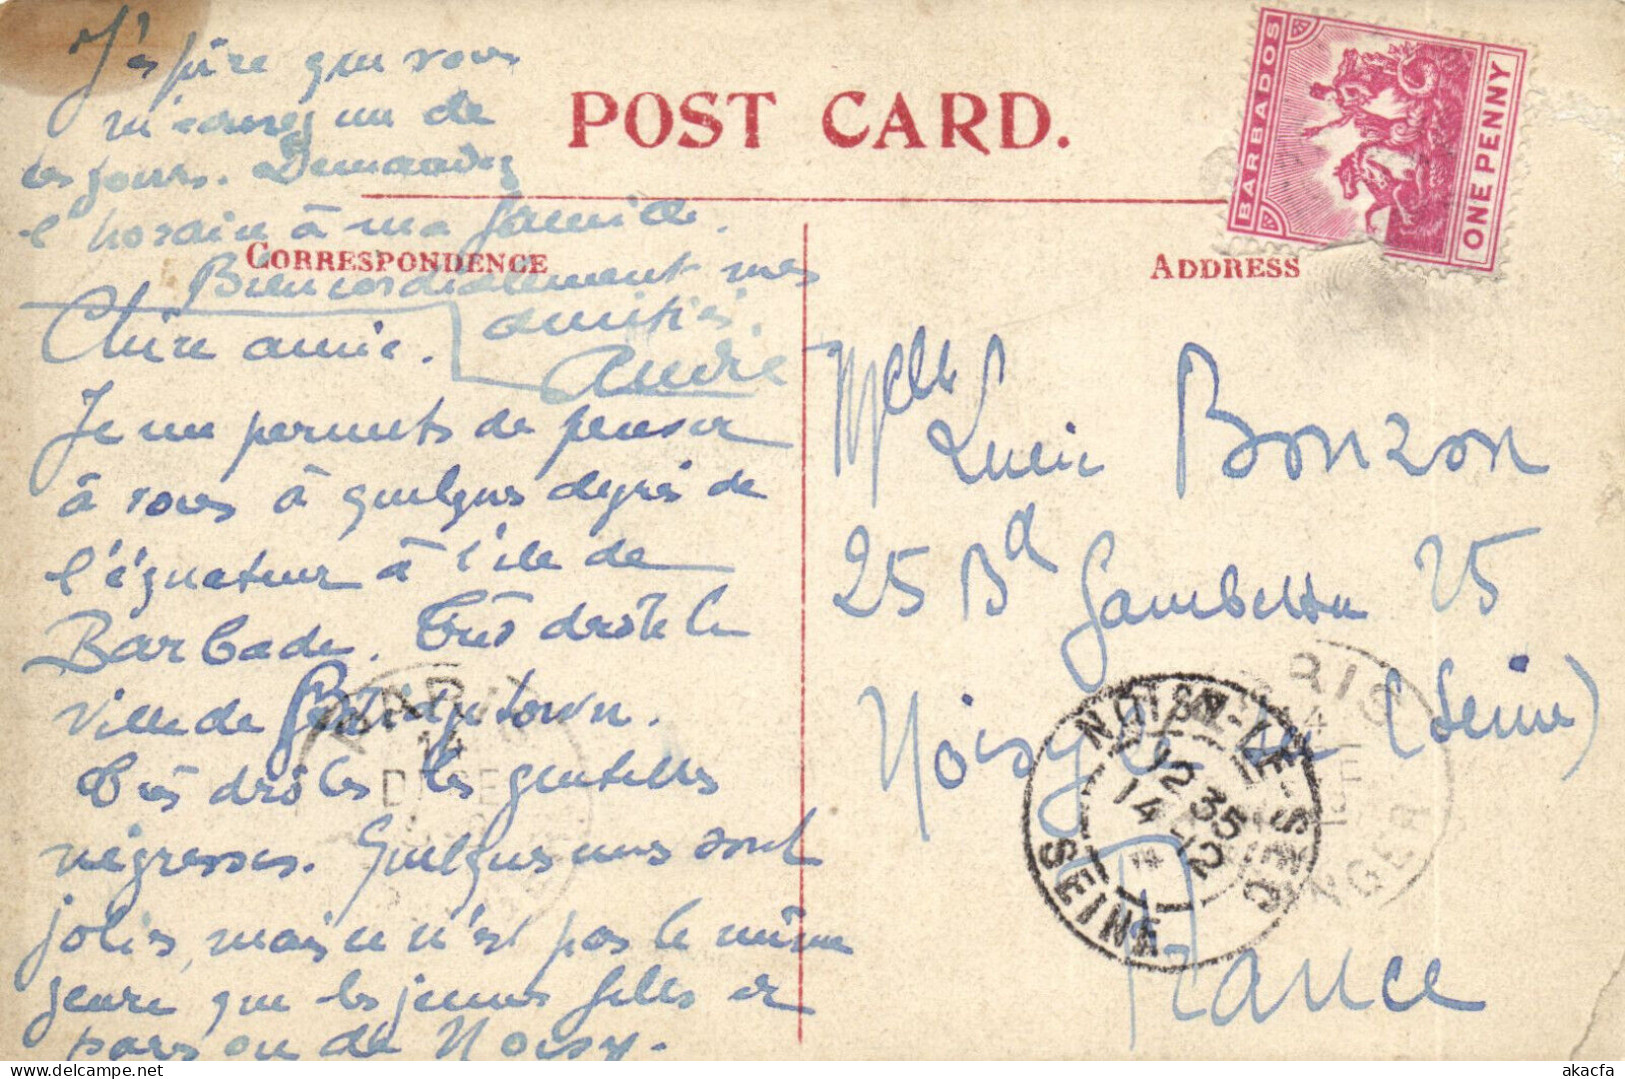 PC BARBADOS, PUBLIC GARDENS, FOUNTAIN, Vintage Postcard (b50080) - Barbades